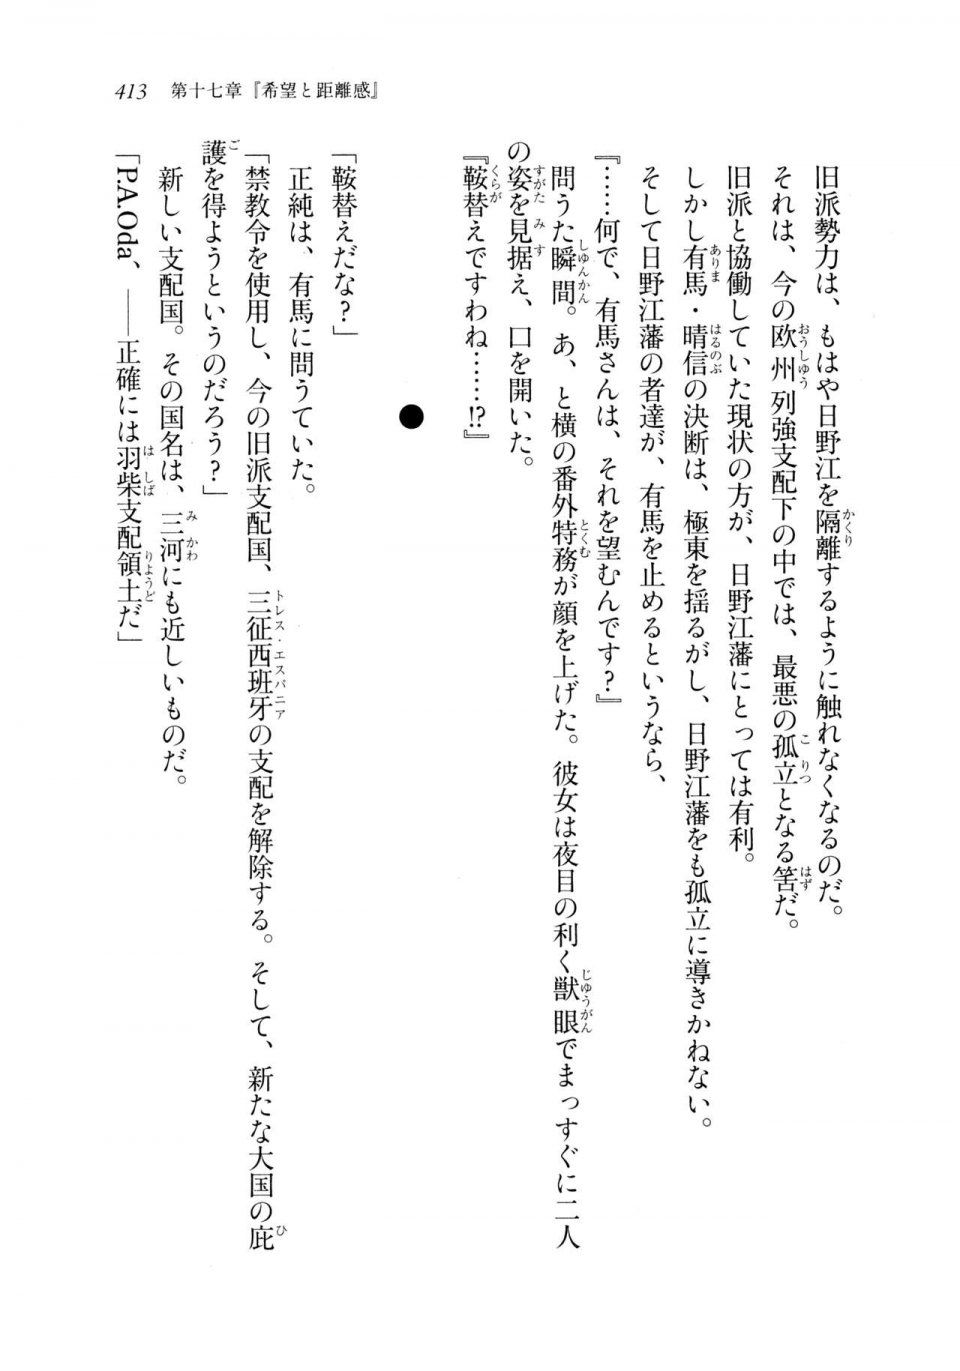 Kyoukai Senjou no Horizon LN Sidestory Vol 2 - Photo #411